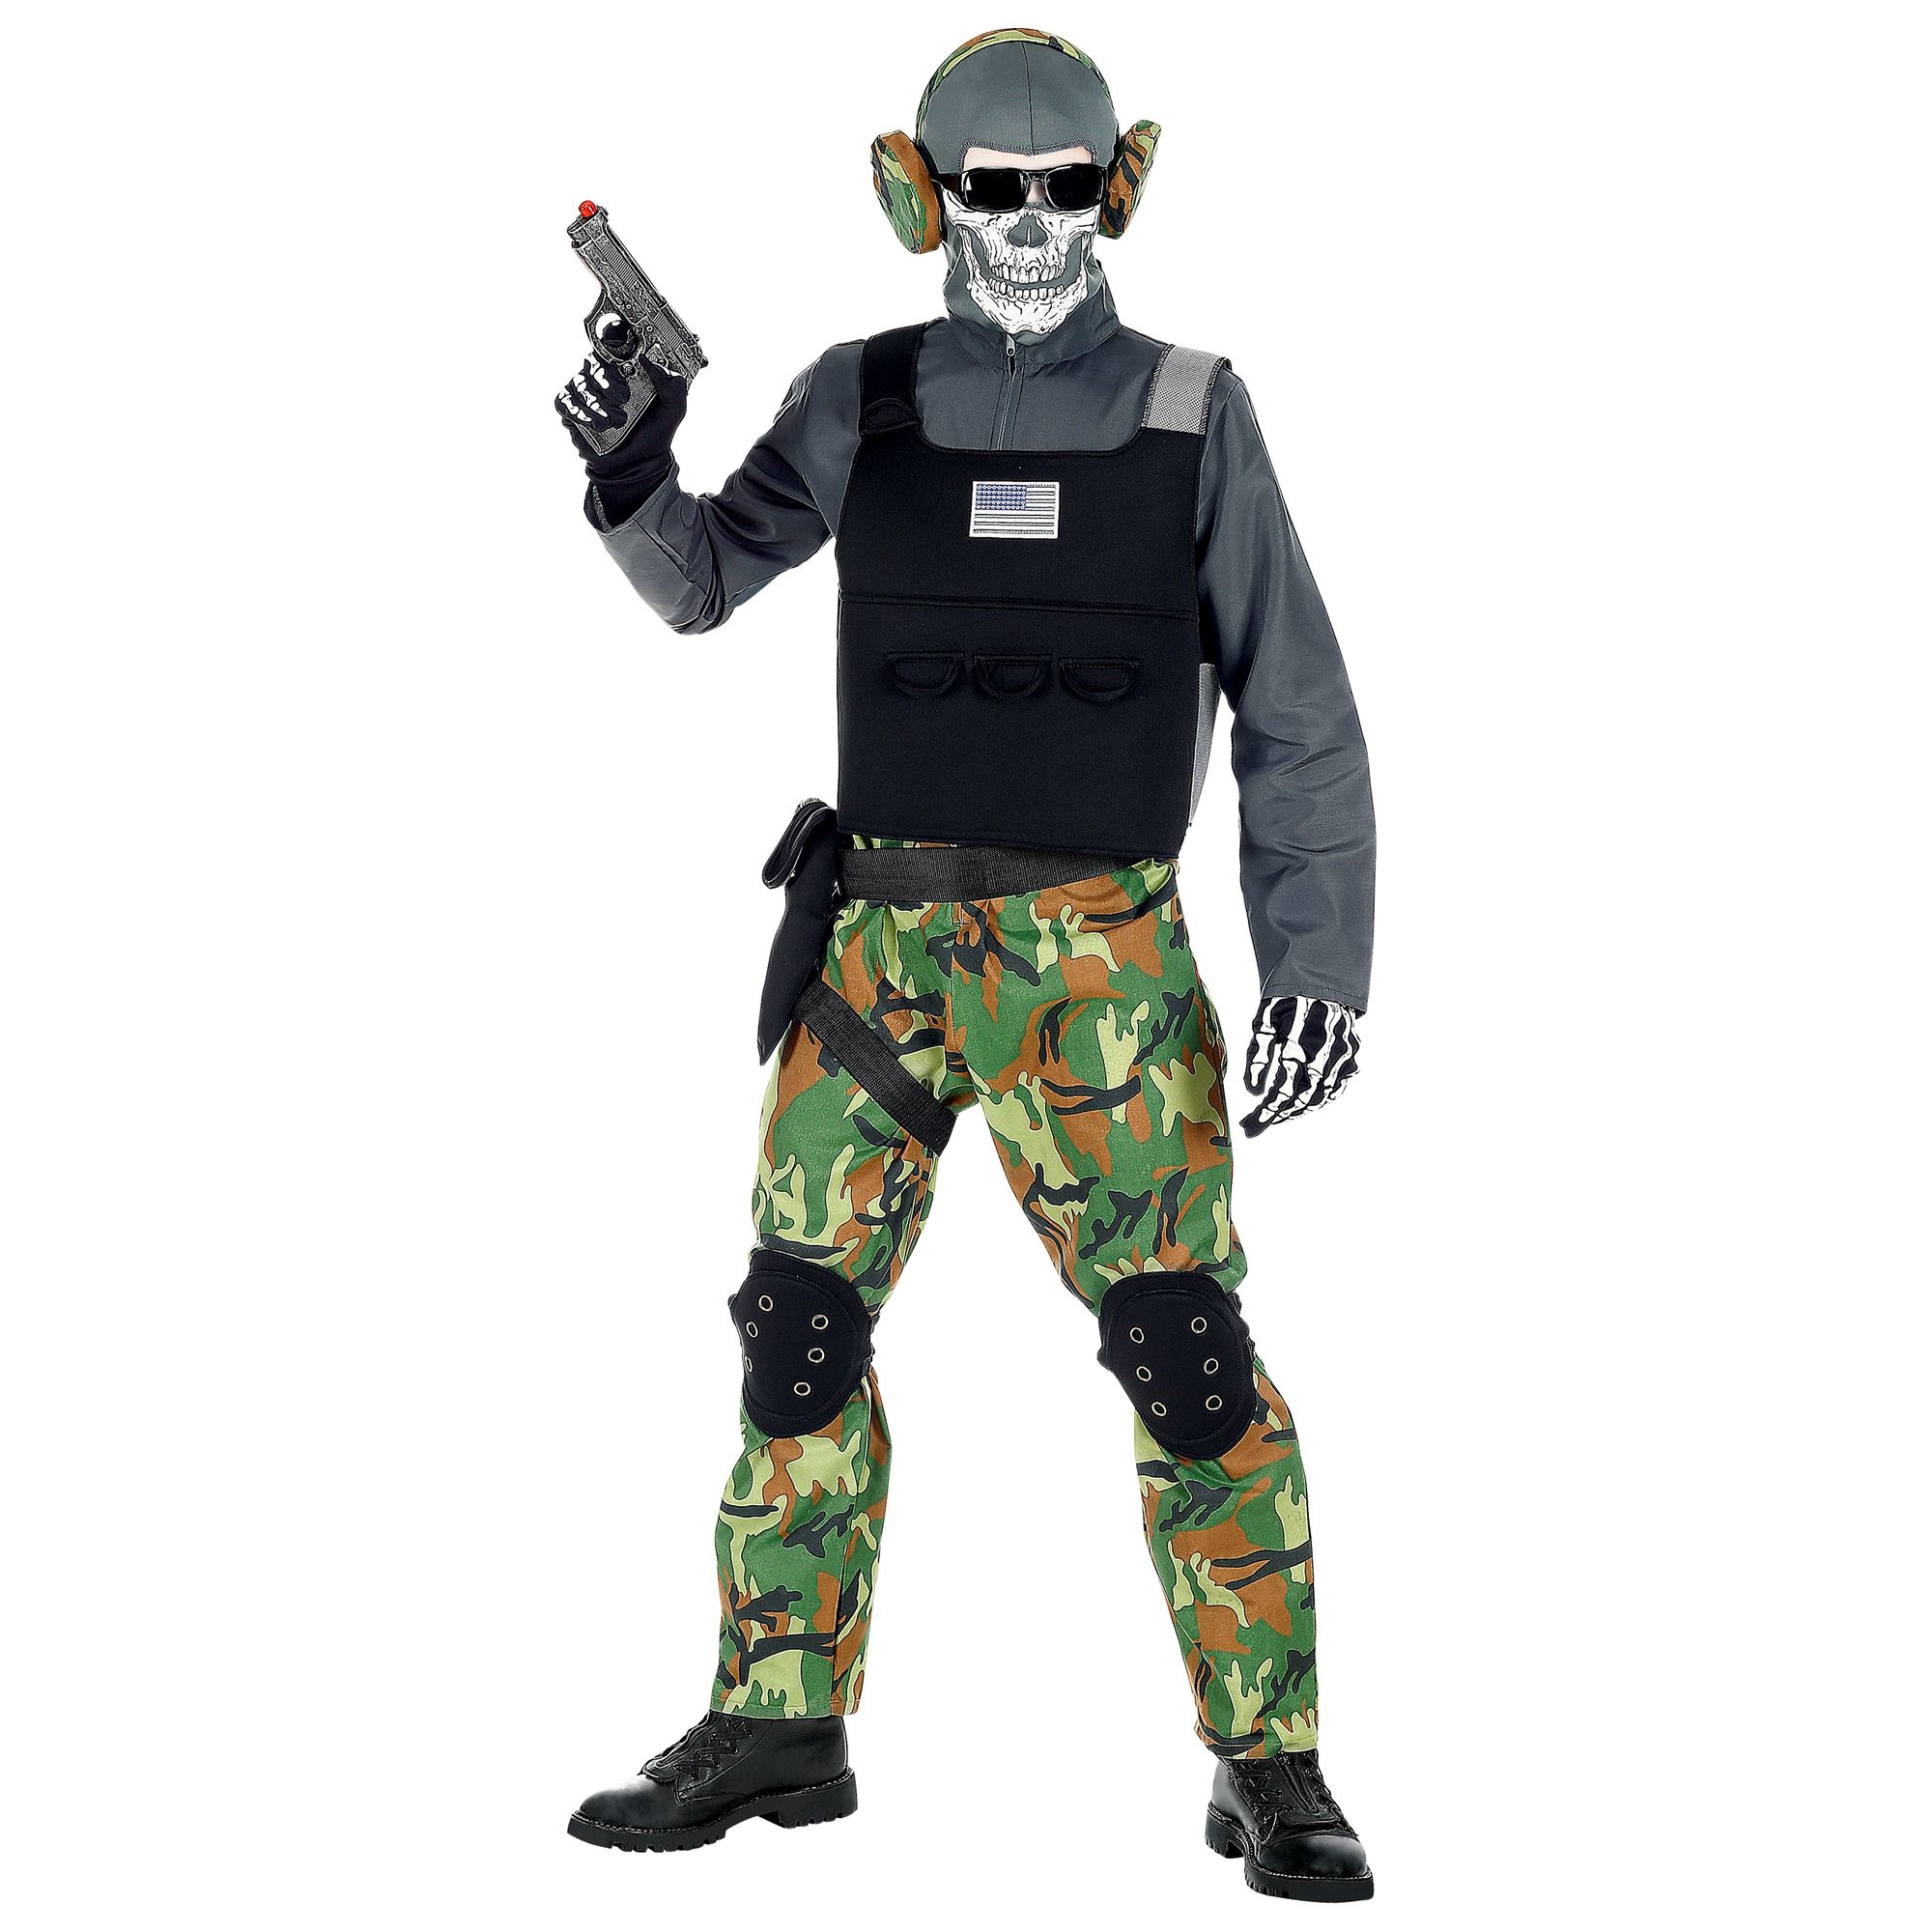 Widmann - Leger & Oorlog Kostuum - Zombie Soldaat Eeuwige Slagvelden Groen Camouflage - Jongen - groen,zwart,grijs - Maat 158 - Halloween - Verkleedkleding